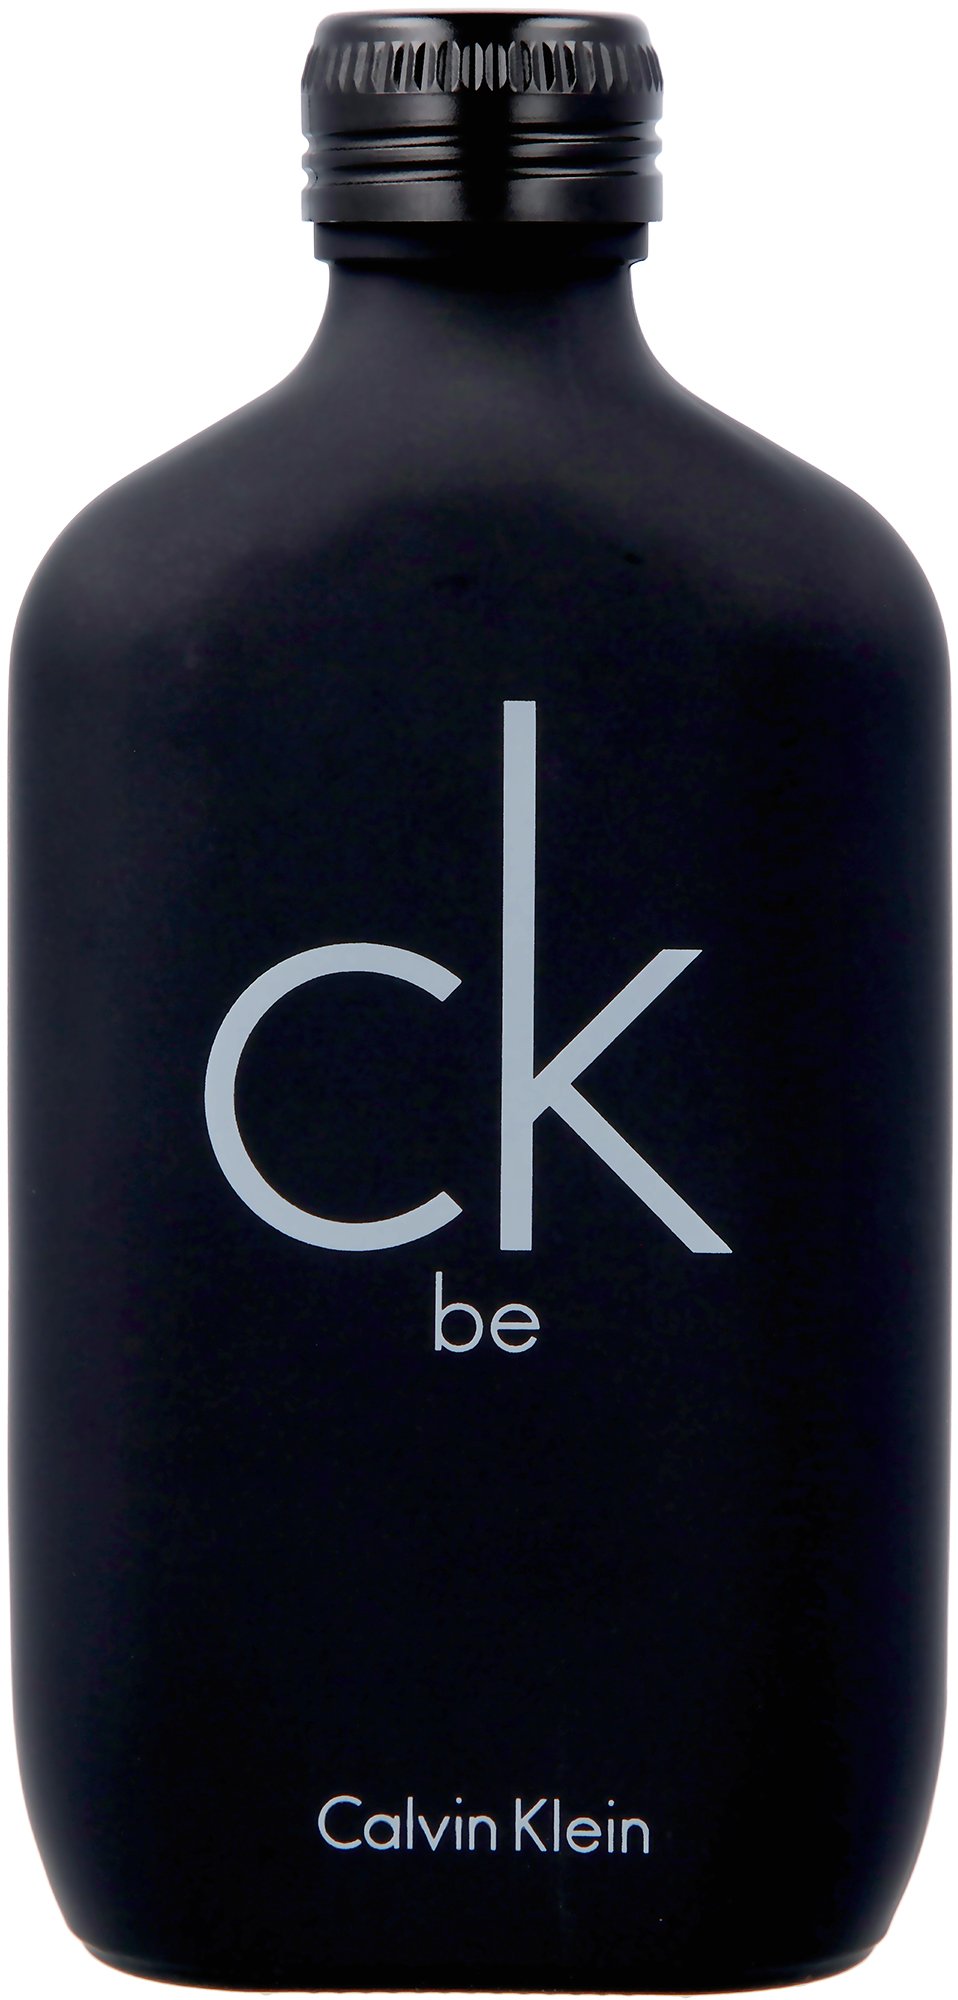 Calvin Klein - CK Be EDT 100 ml - Skjønnhet